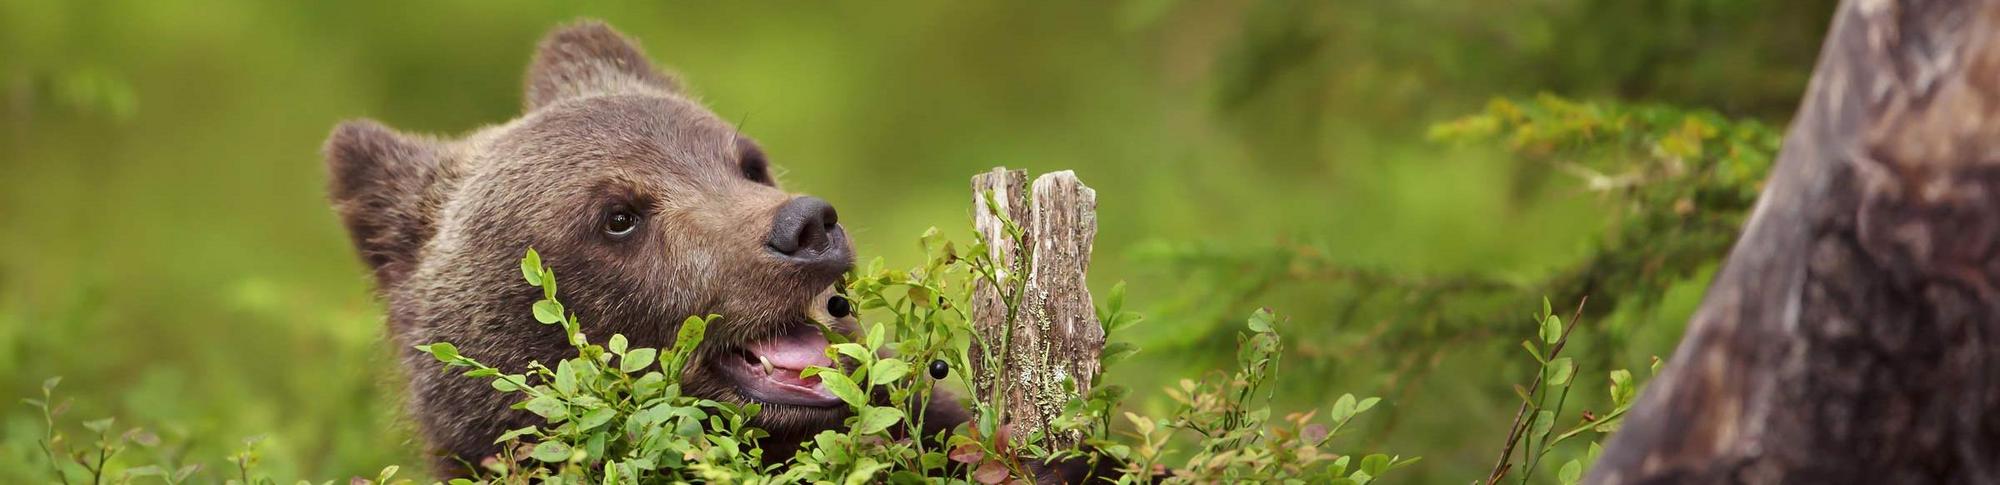 Ein junger Braunbär isst Blaubeeren im Wald.